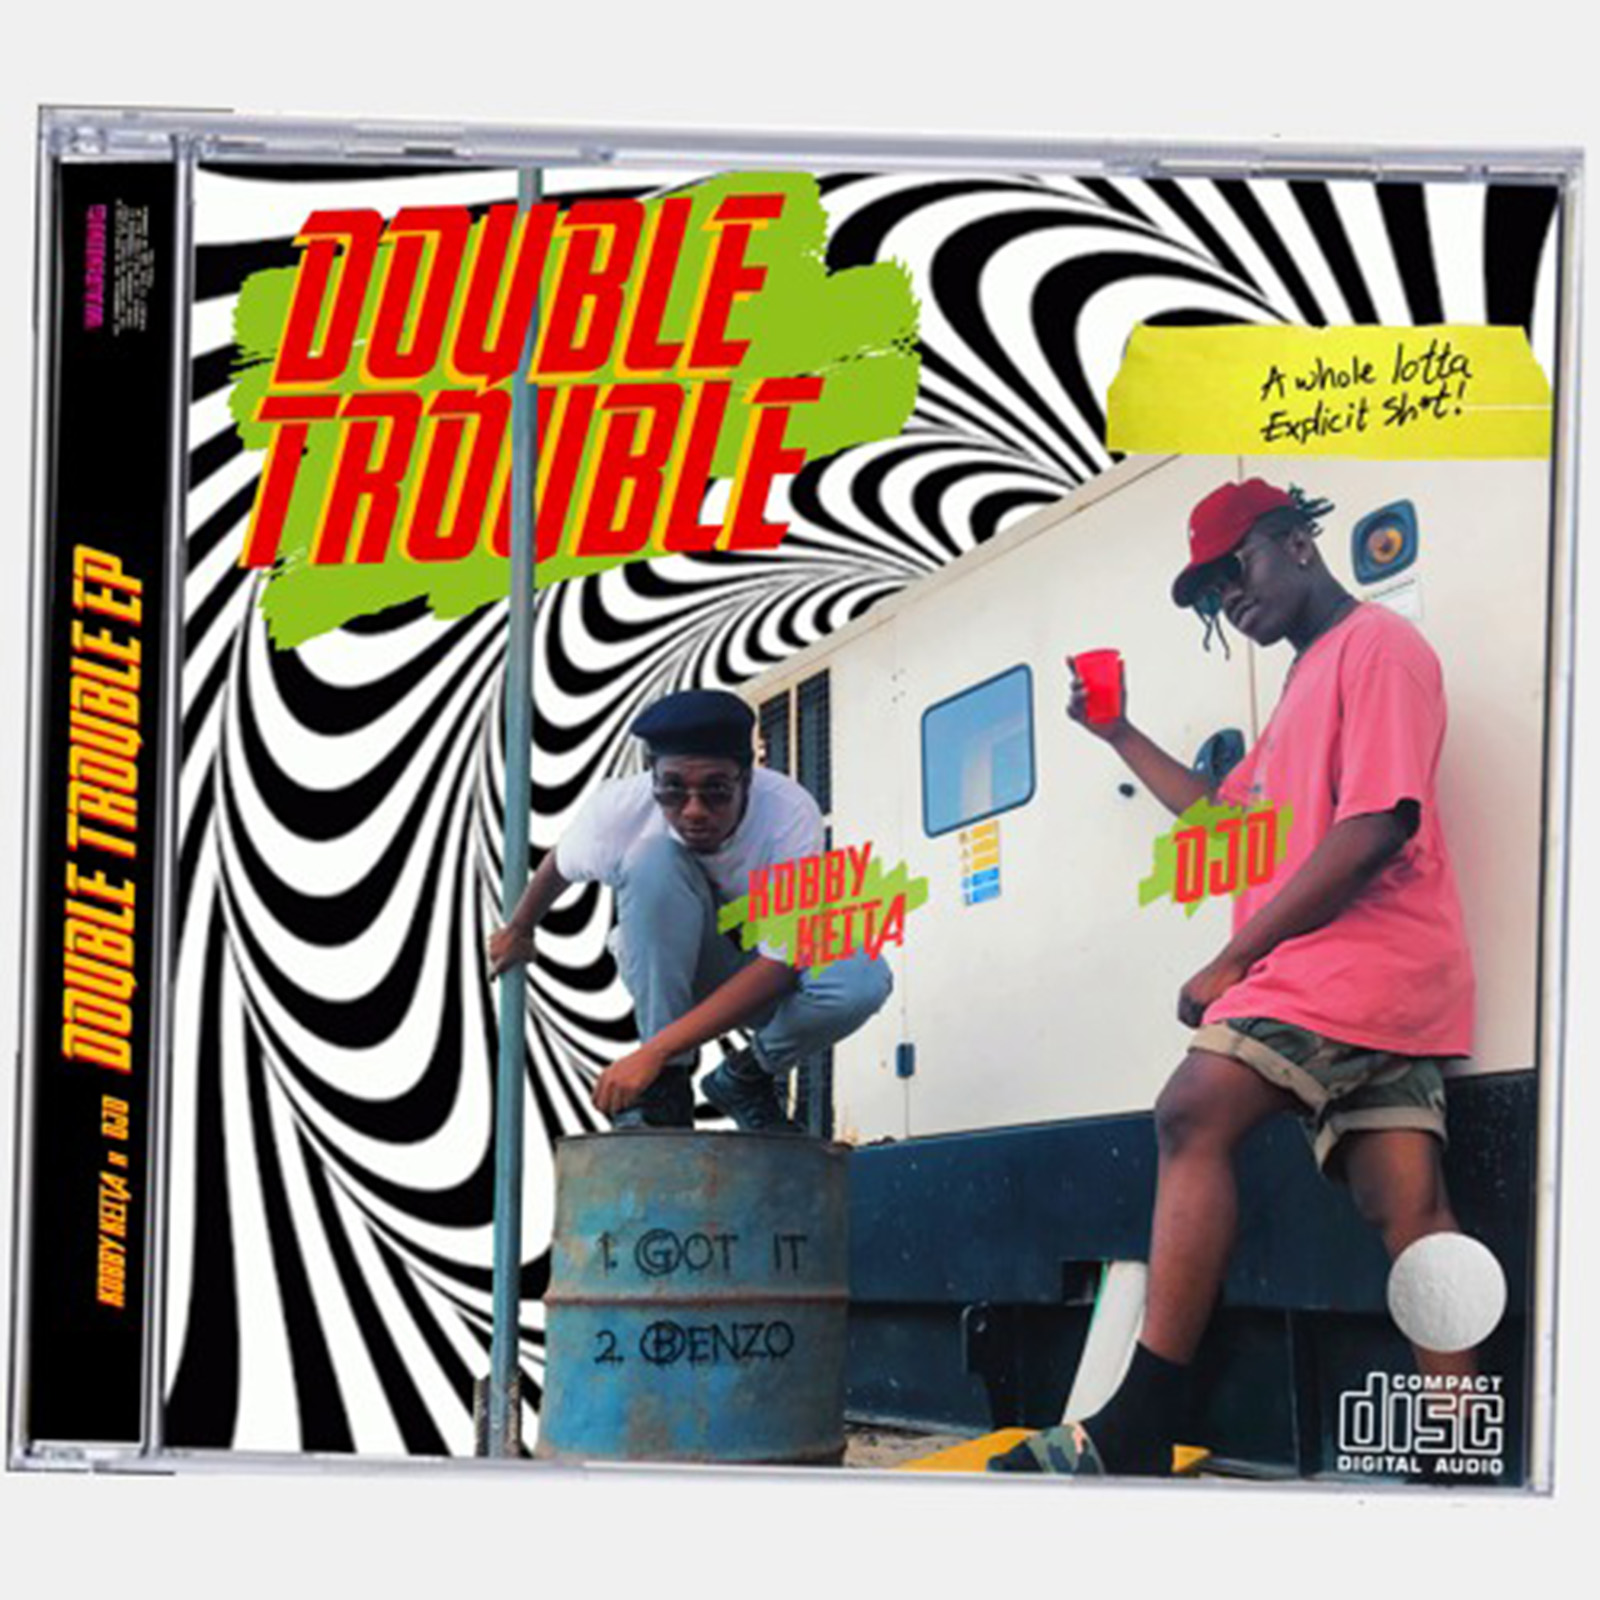 Double Trouble by Ojo & Kobby Keita